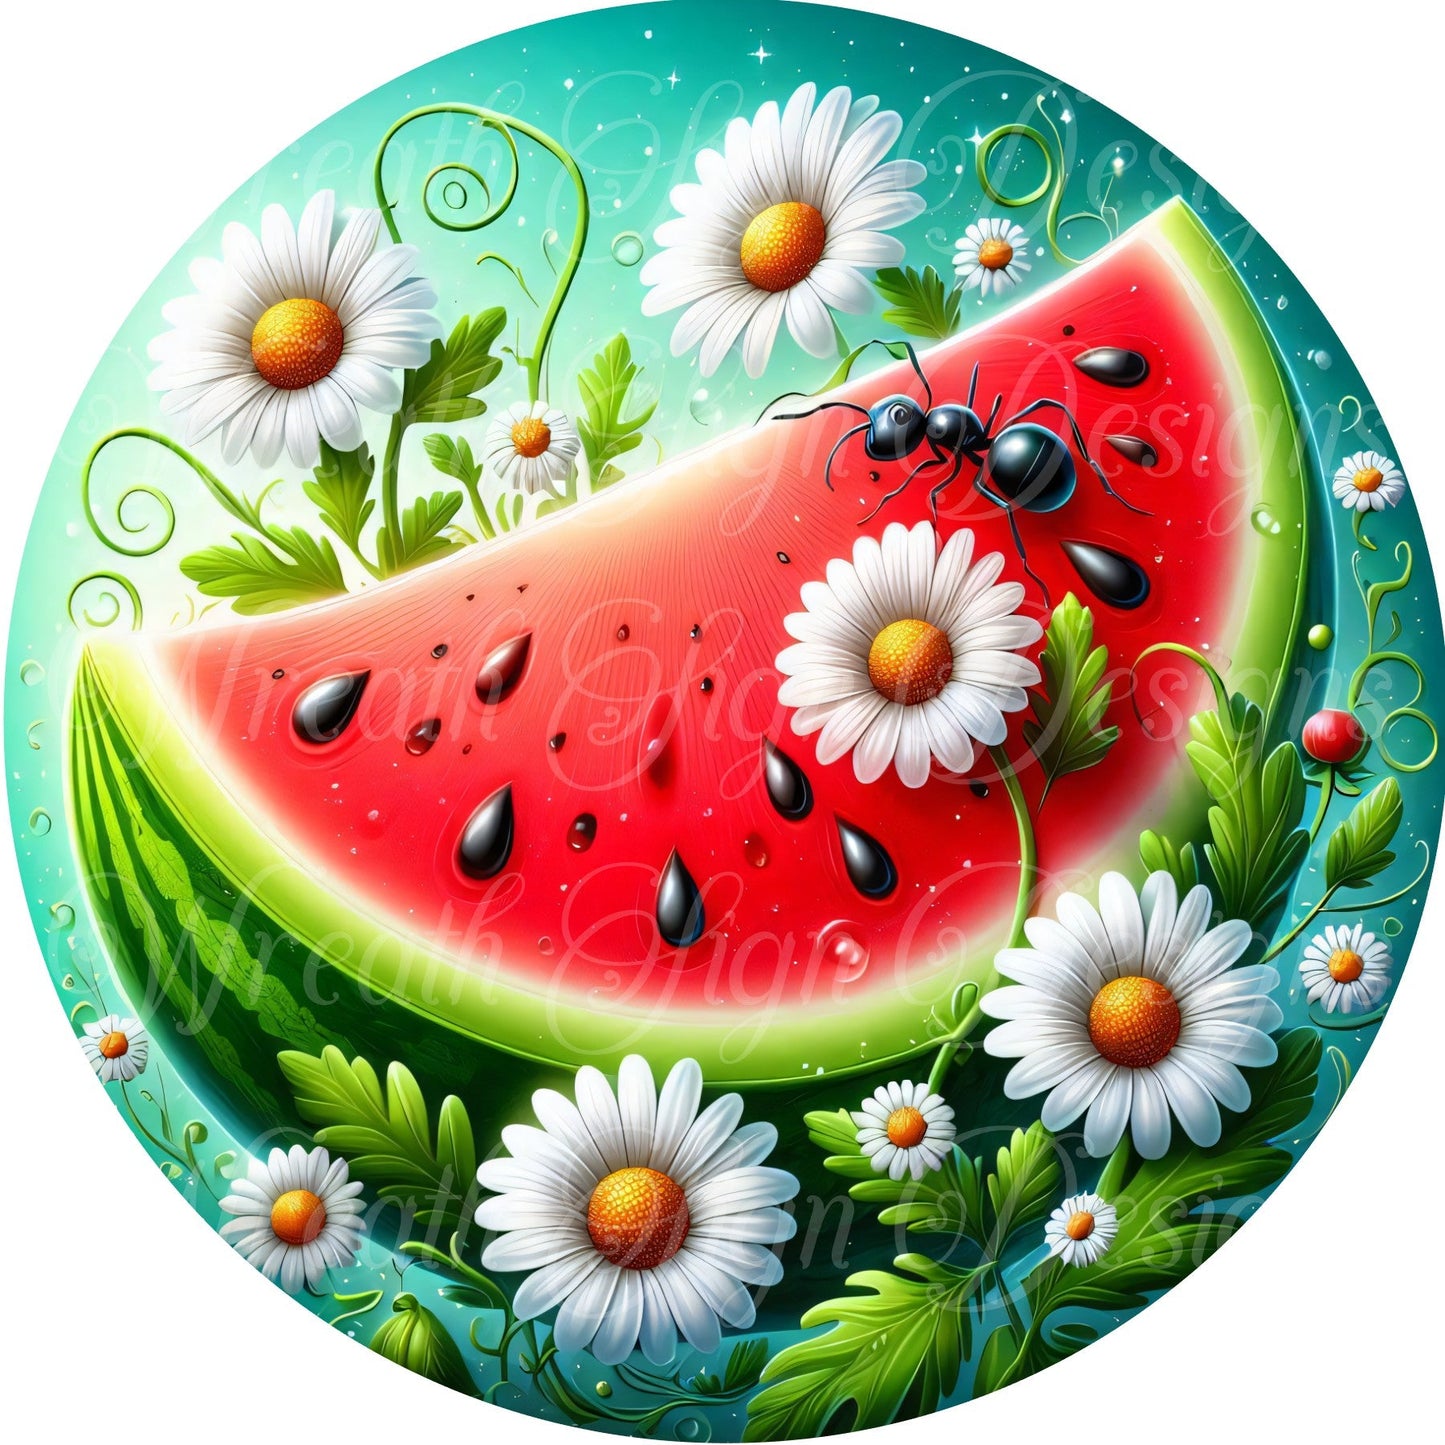 Watermelon summertime sign,  Daisy Wreath Sign, Wreath Center, Wreath Attachment  Metal Sign Wreath plate